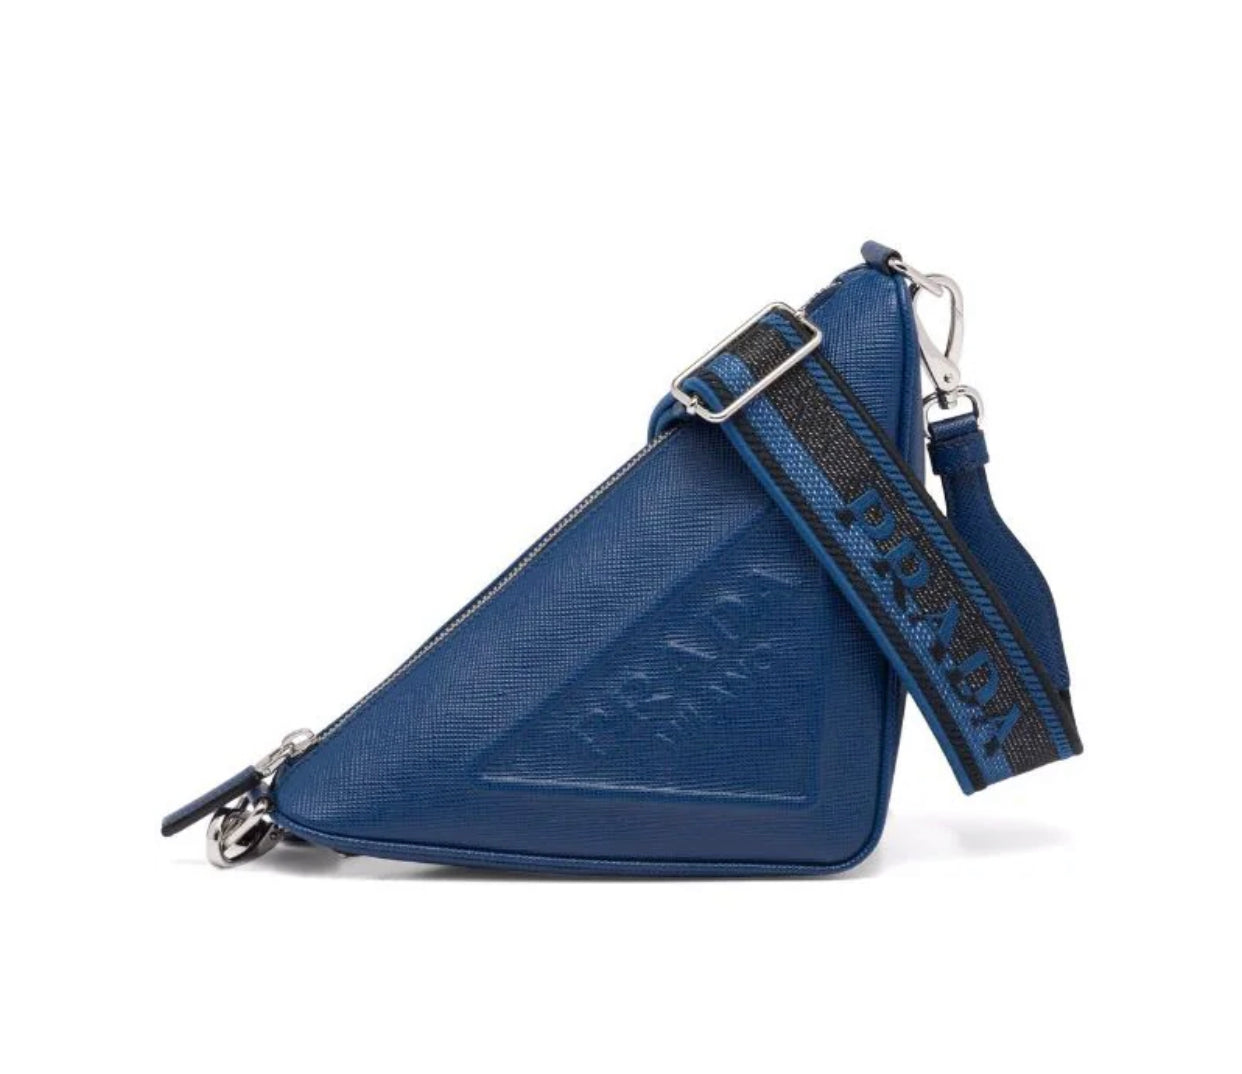 Prada Saffiano Bow Handbag  Rent Prada Handbags for $55/month